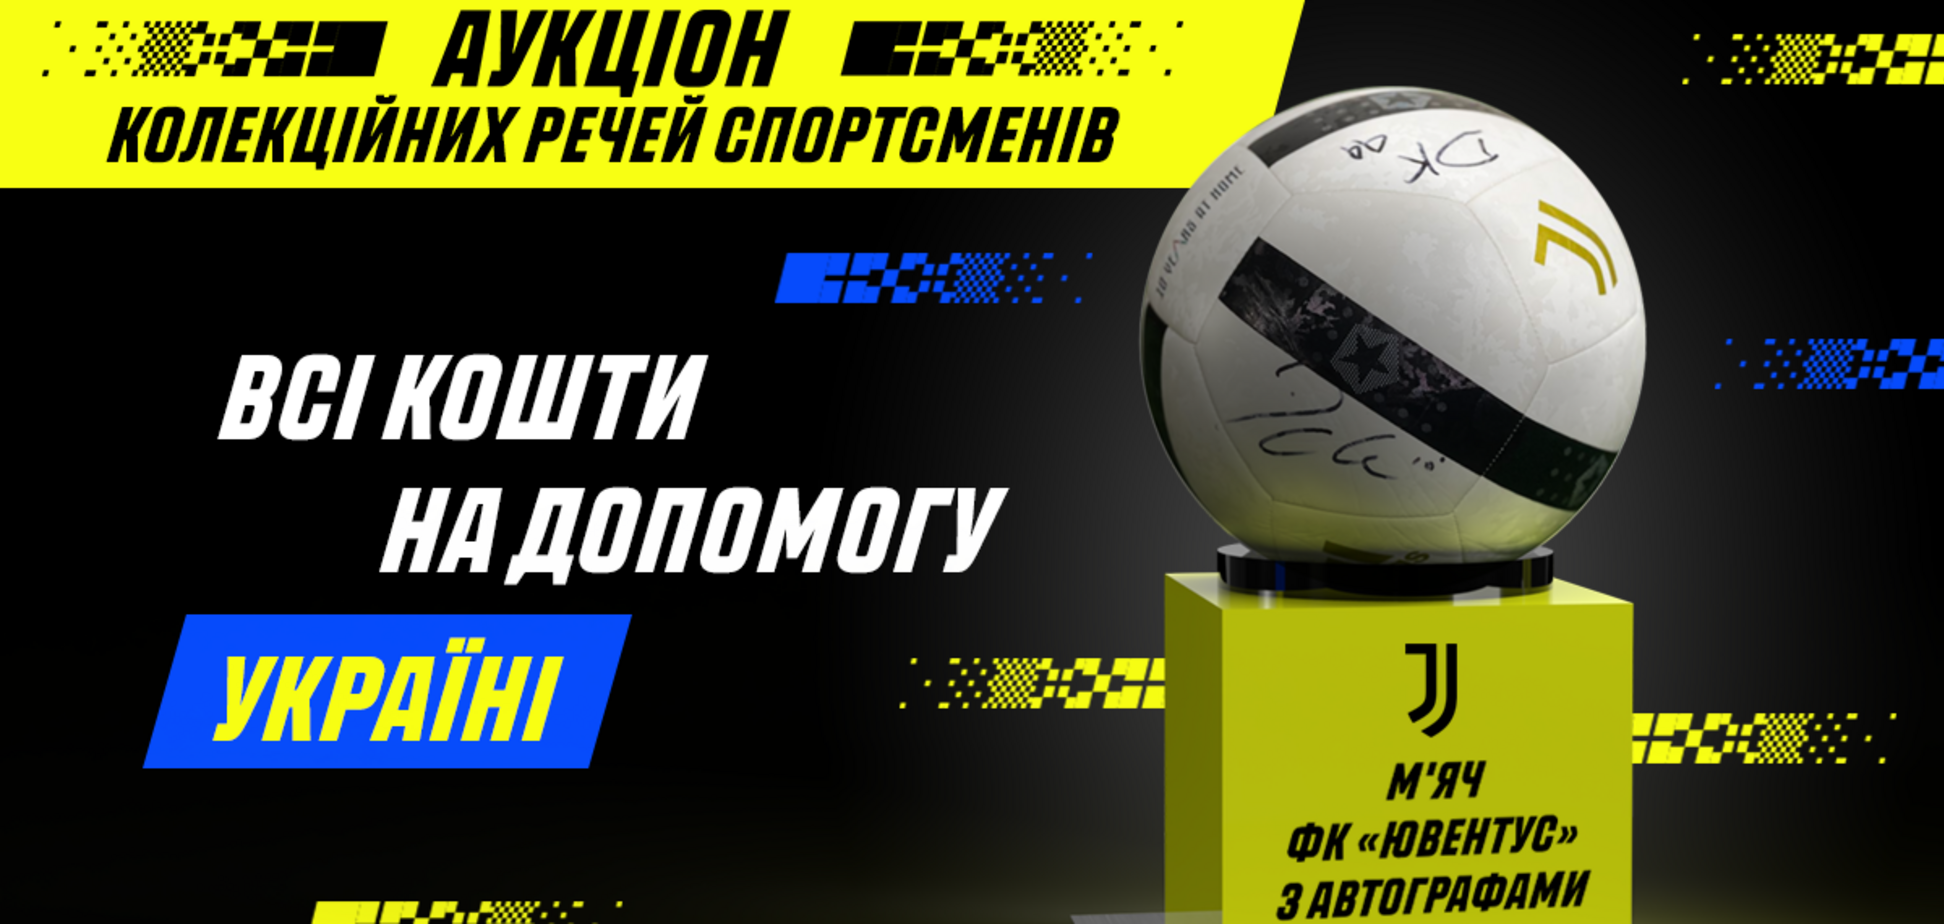 FC Juventus и Parimatch Ukraine продолжают помогать украинцам